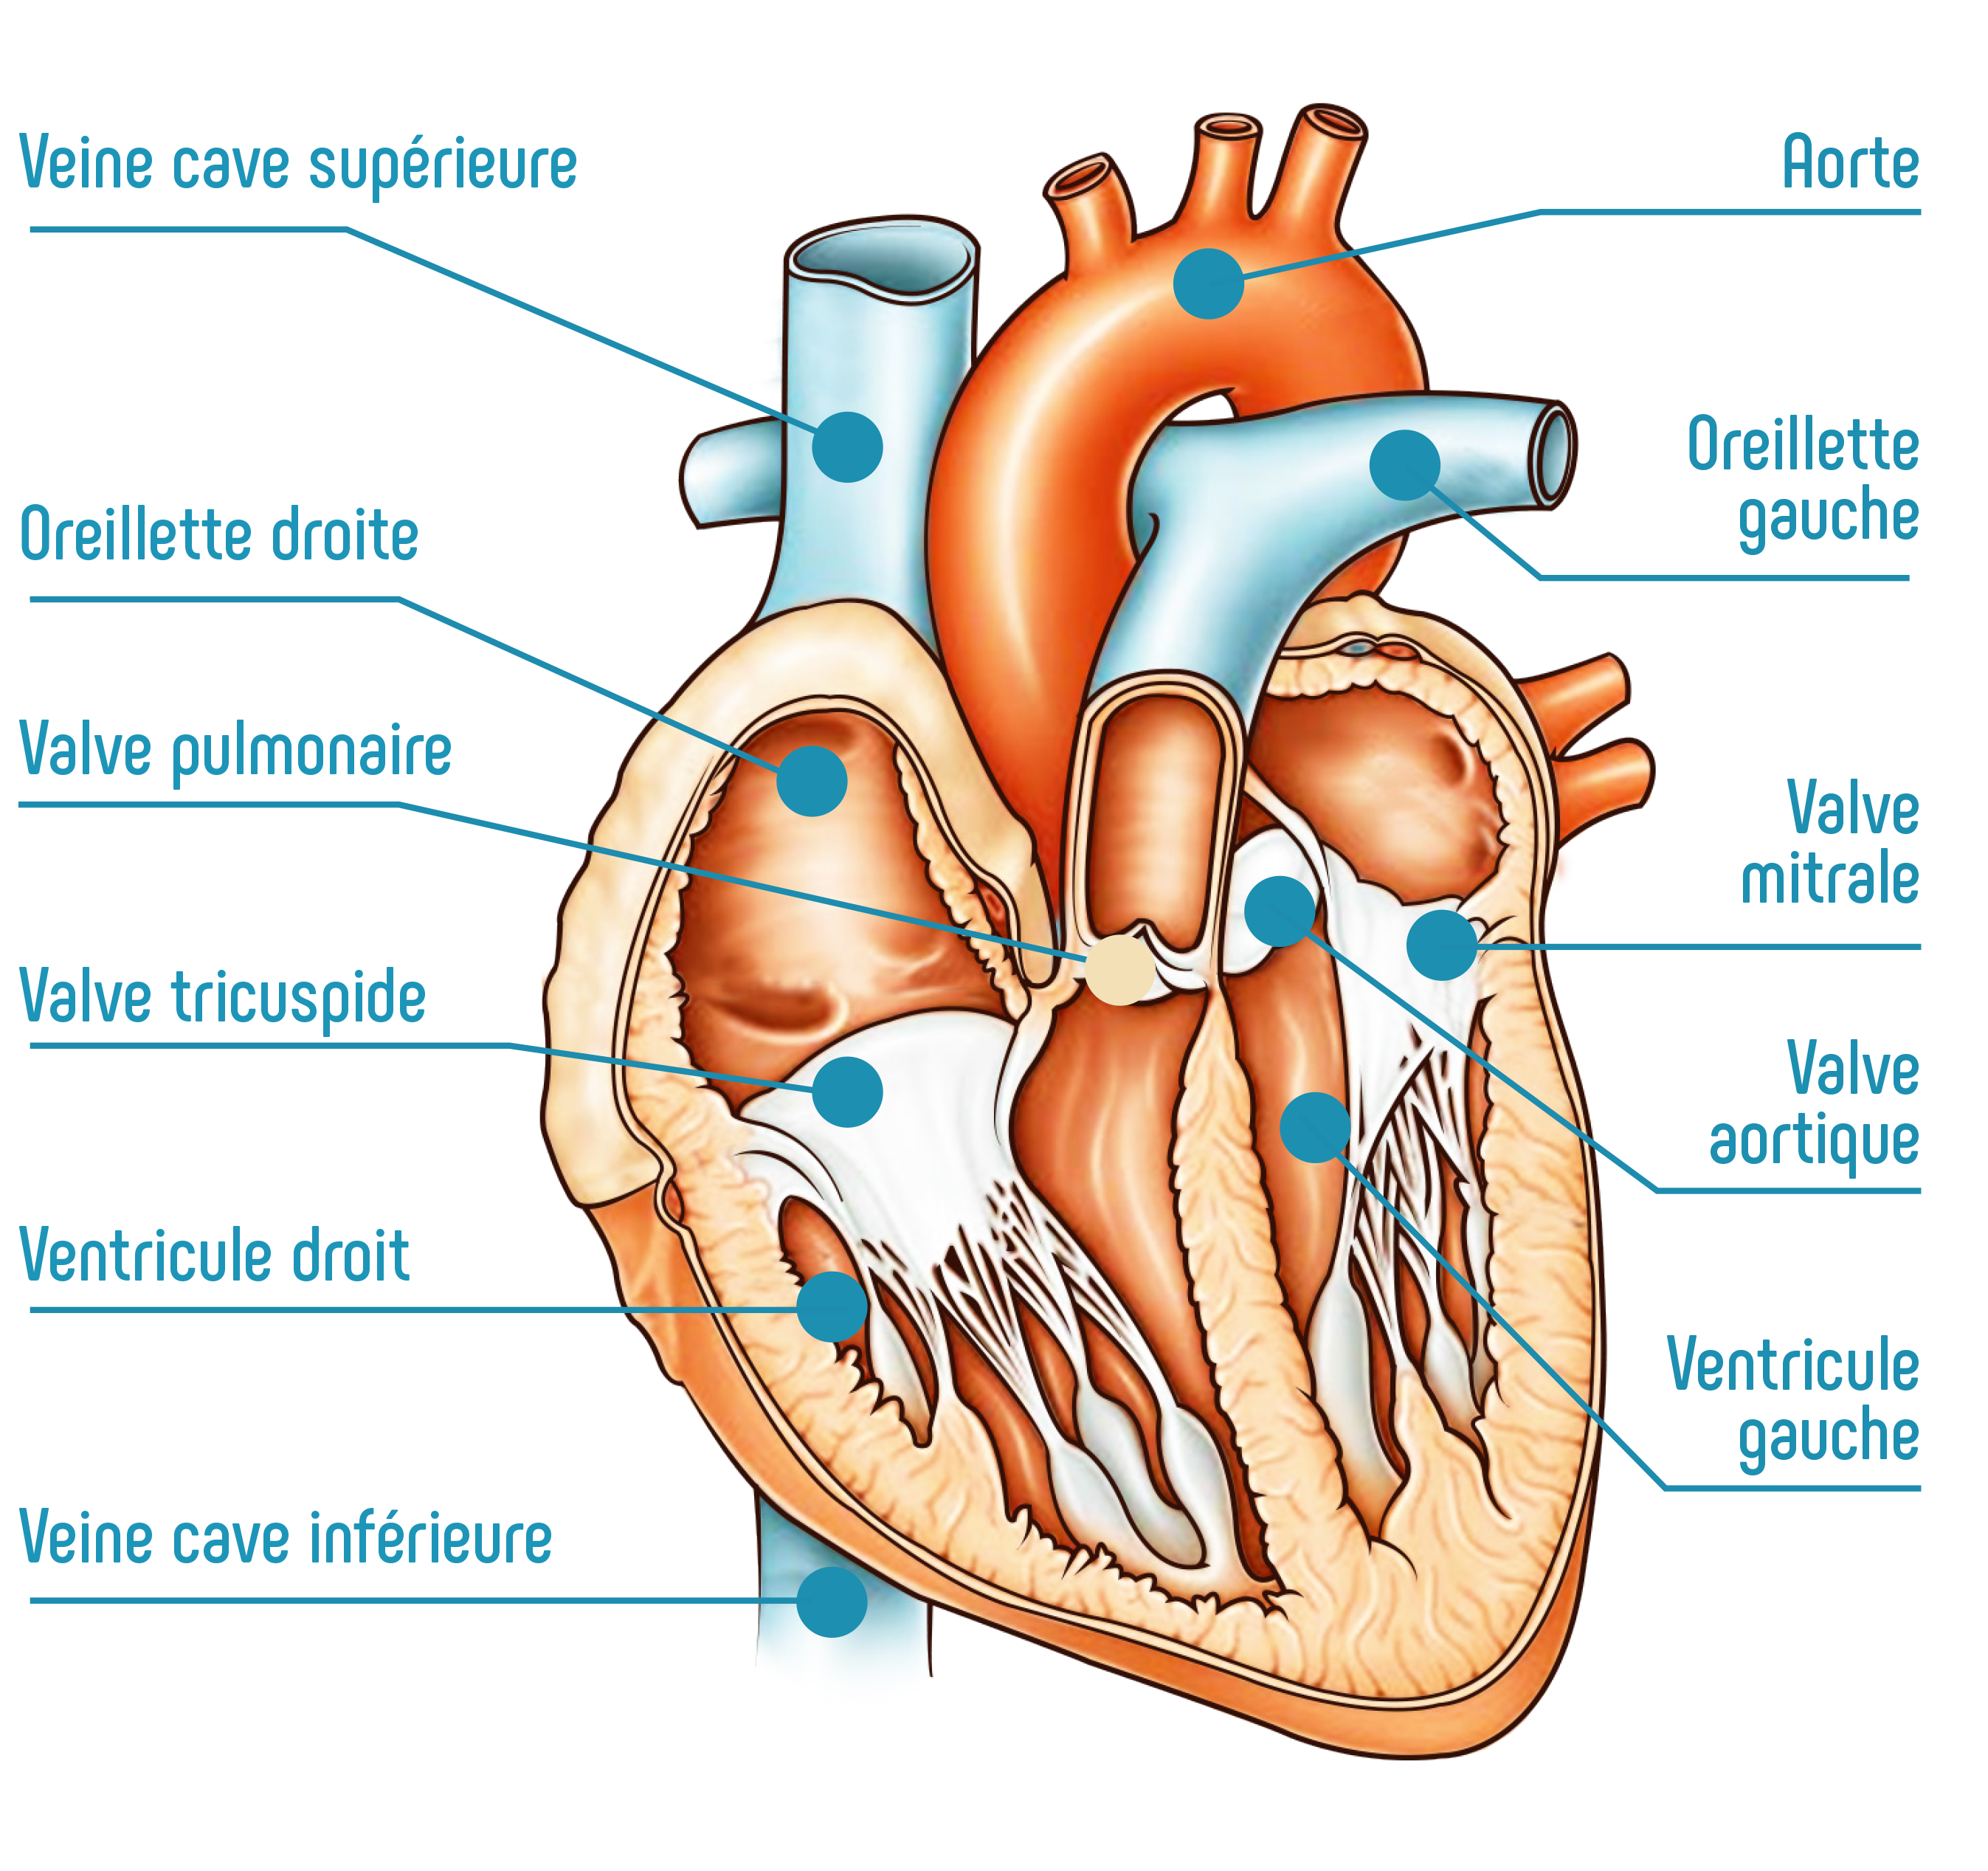 Modèle anatomique du cœur humain, agrandi 2 fois, en 4 parties